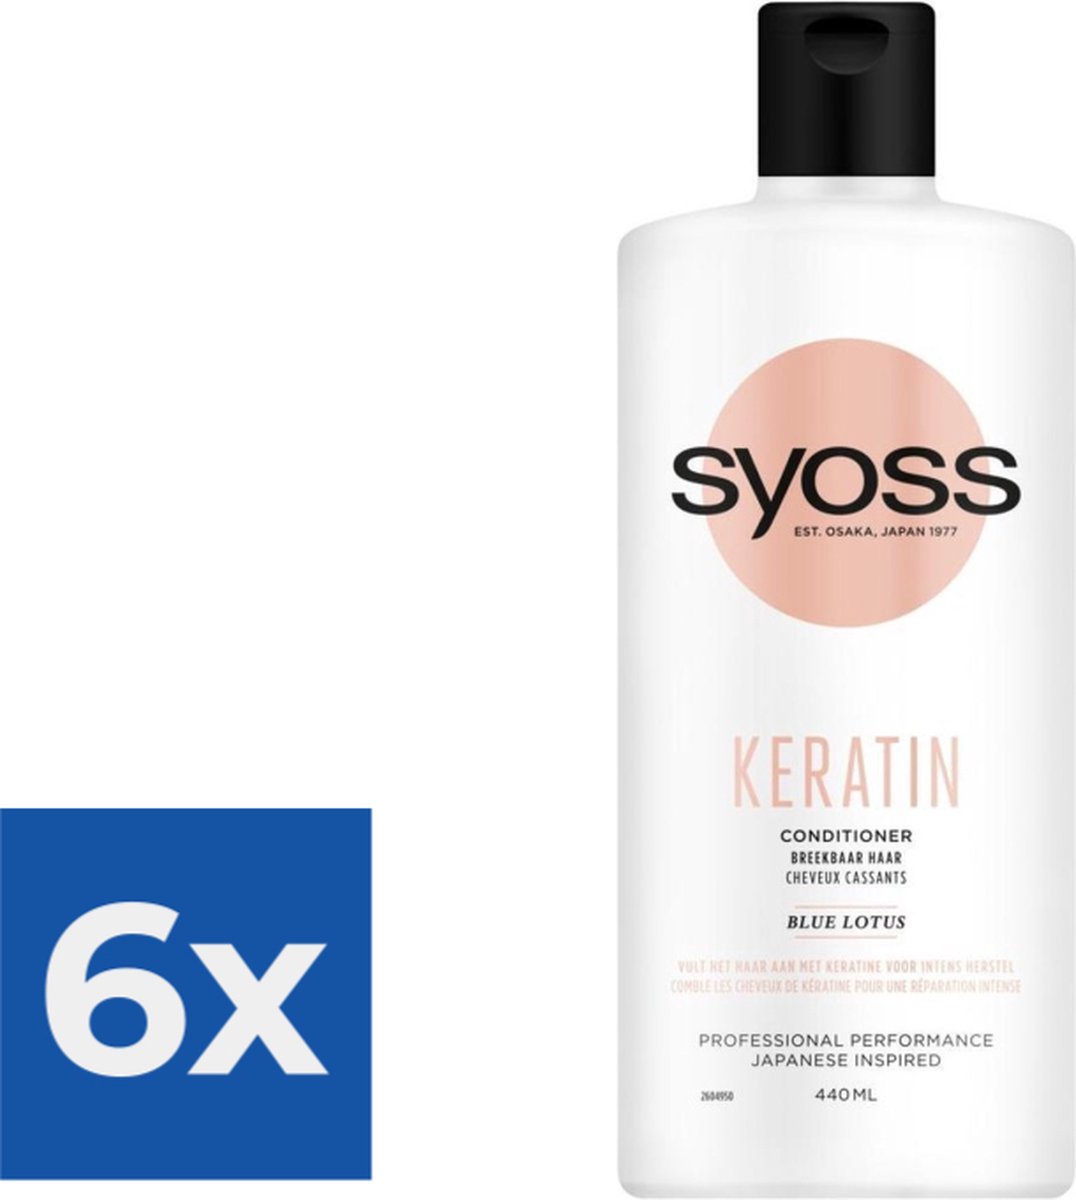 Syoss Keratin Conditioner 440 ml - Voordeelverpakking 6 stuks